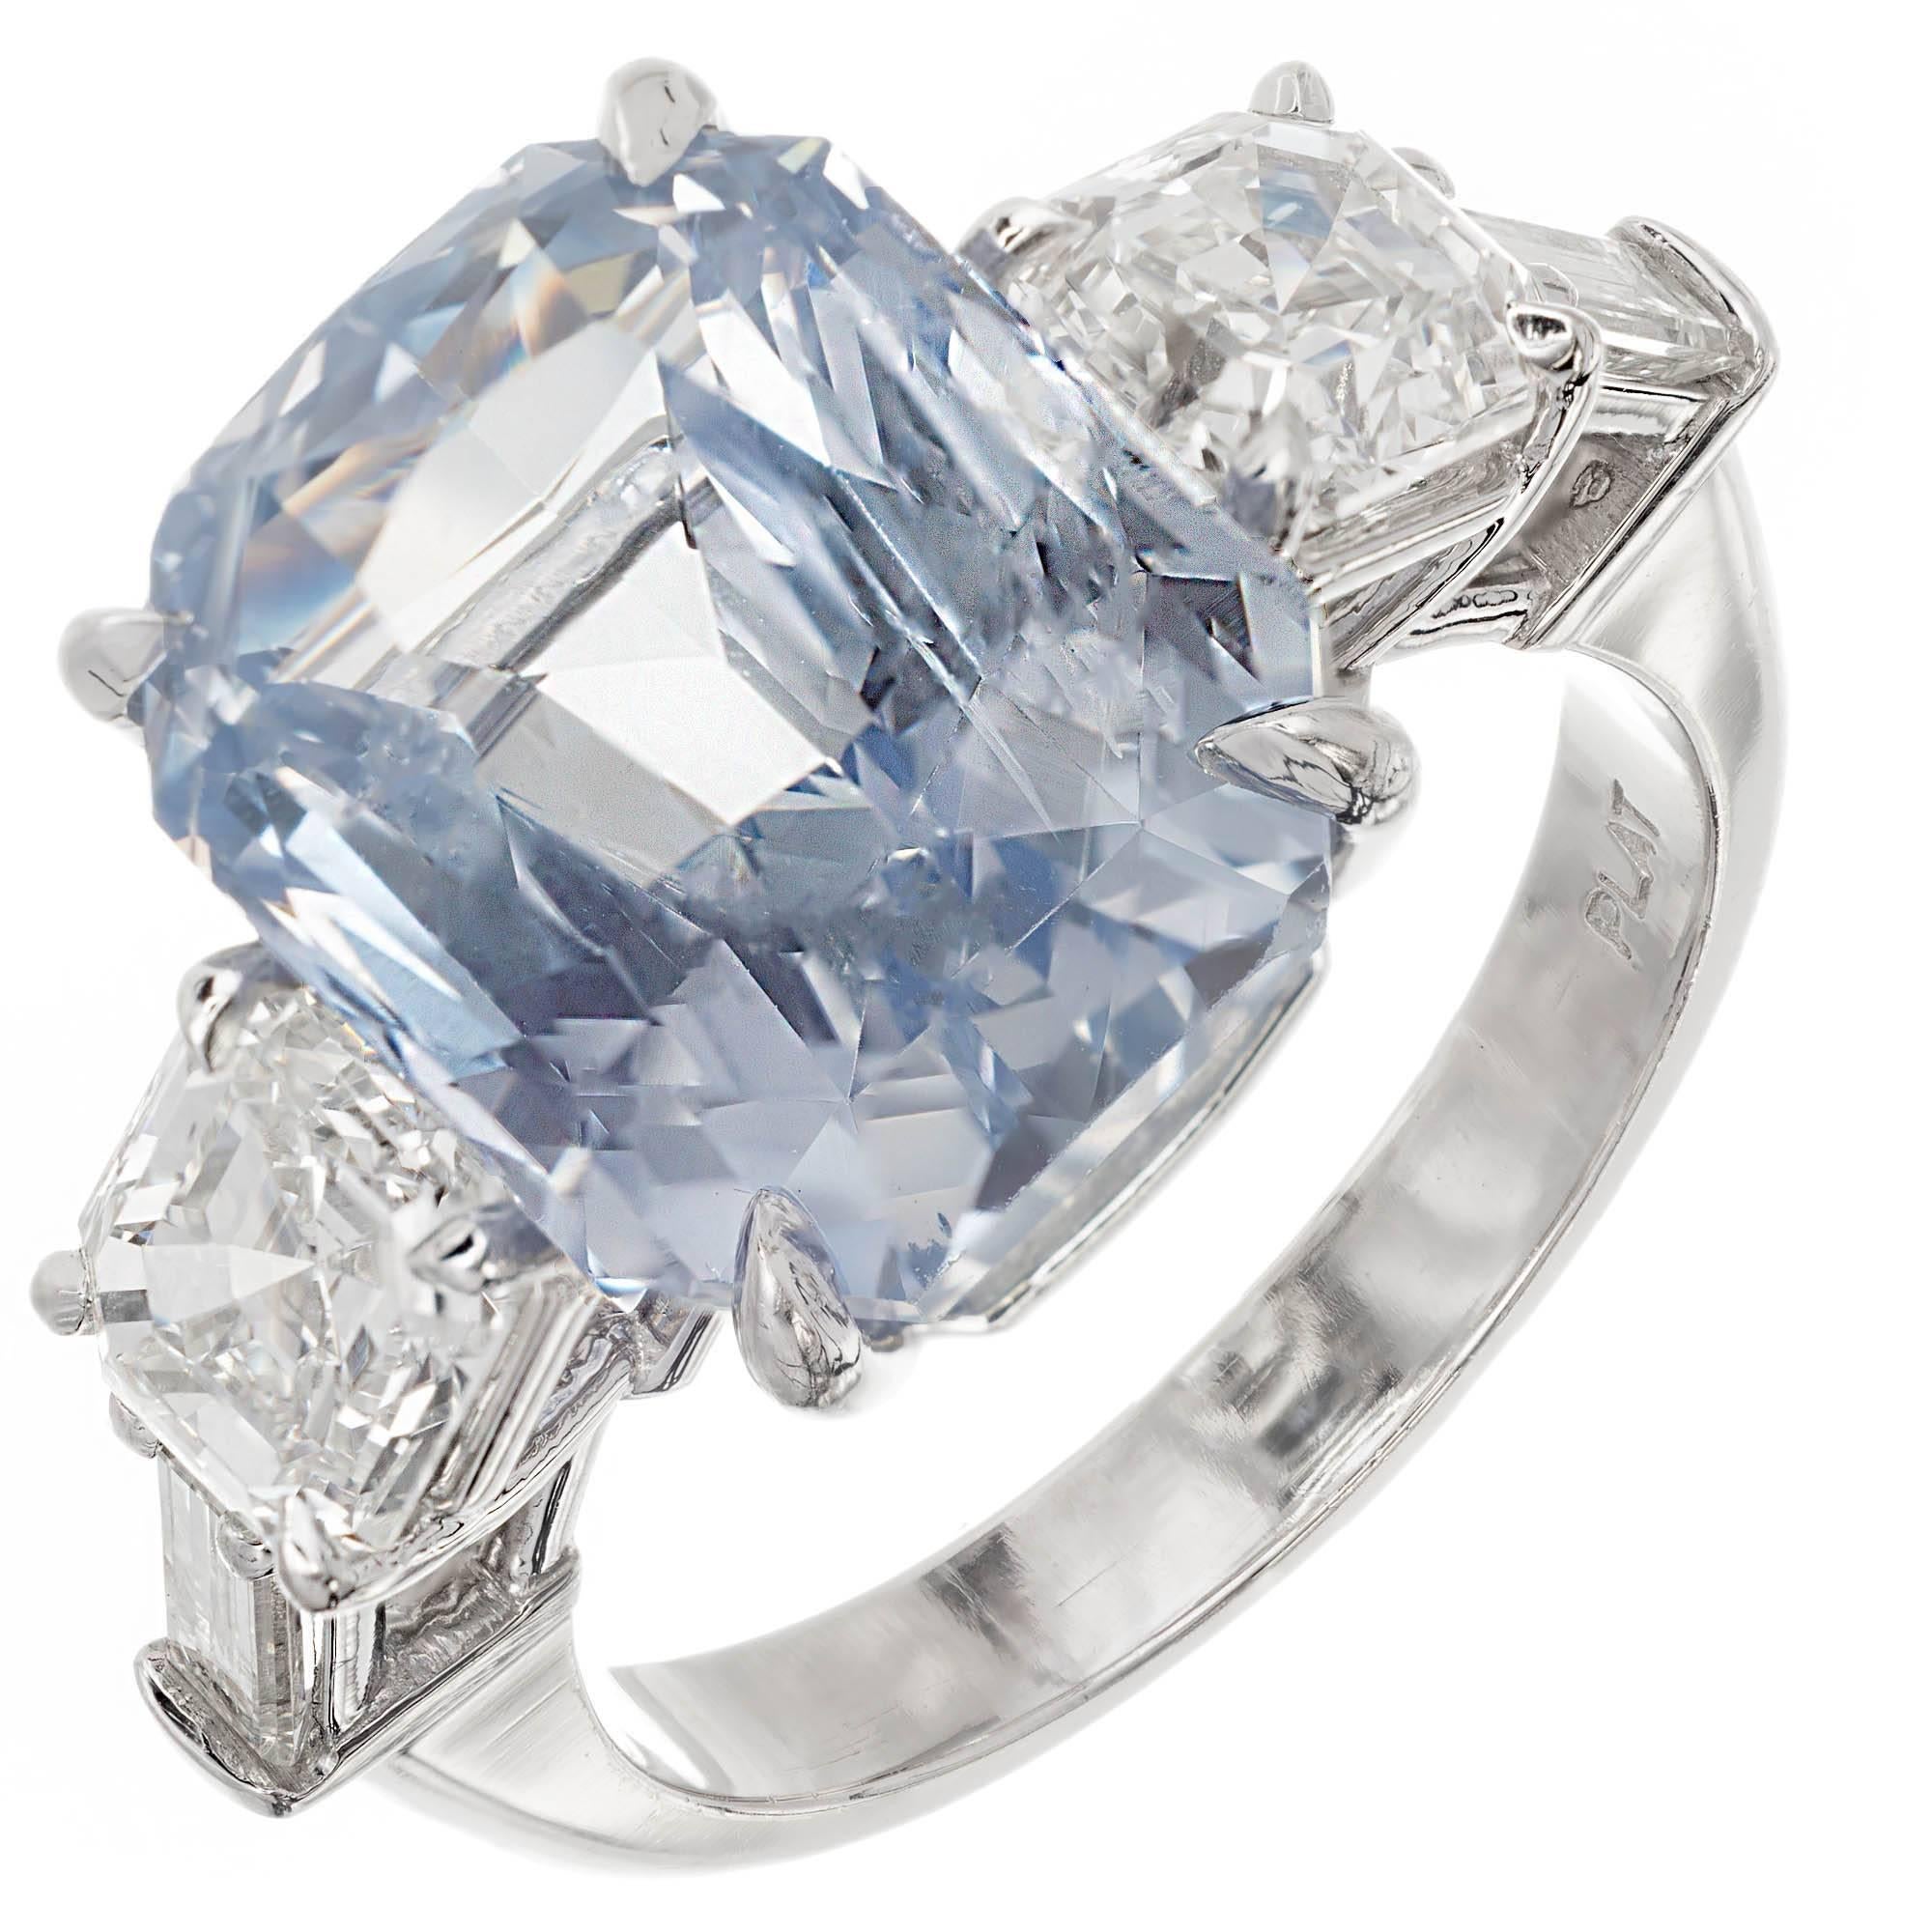 Light blue sapphire engagement rings - cityple